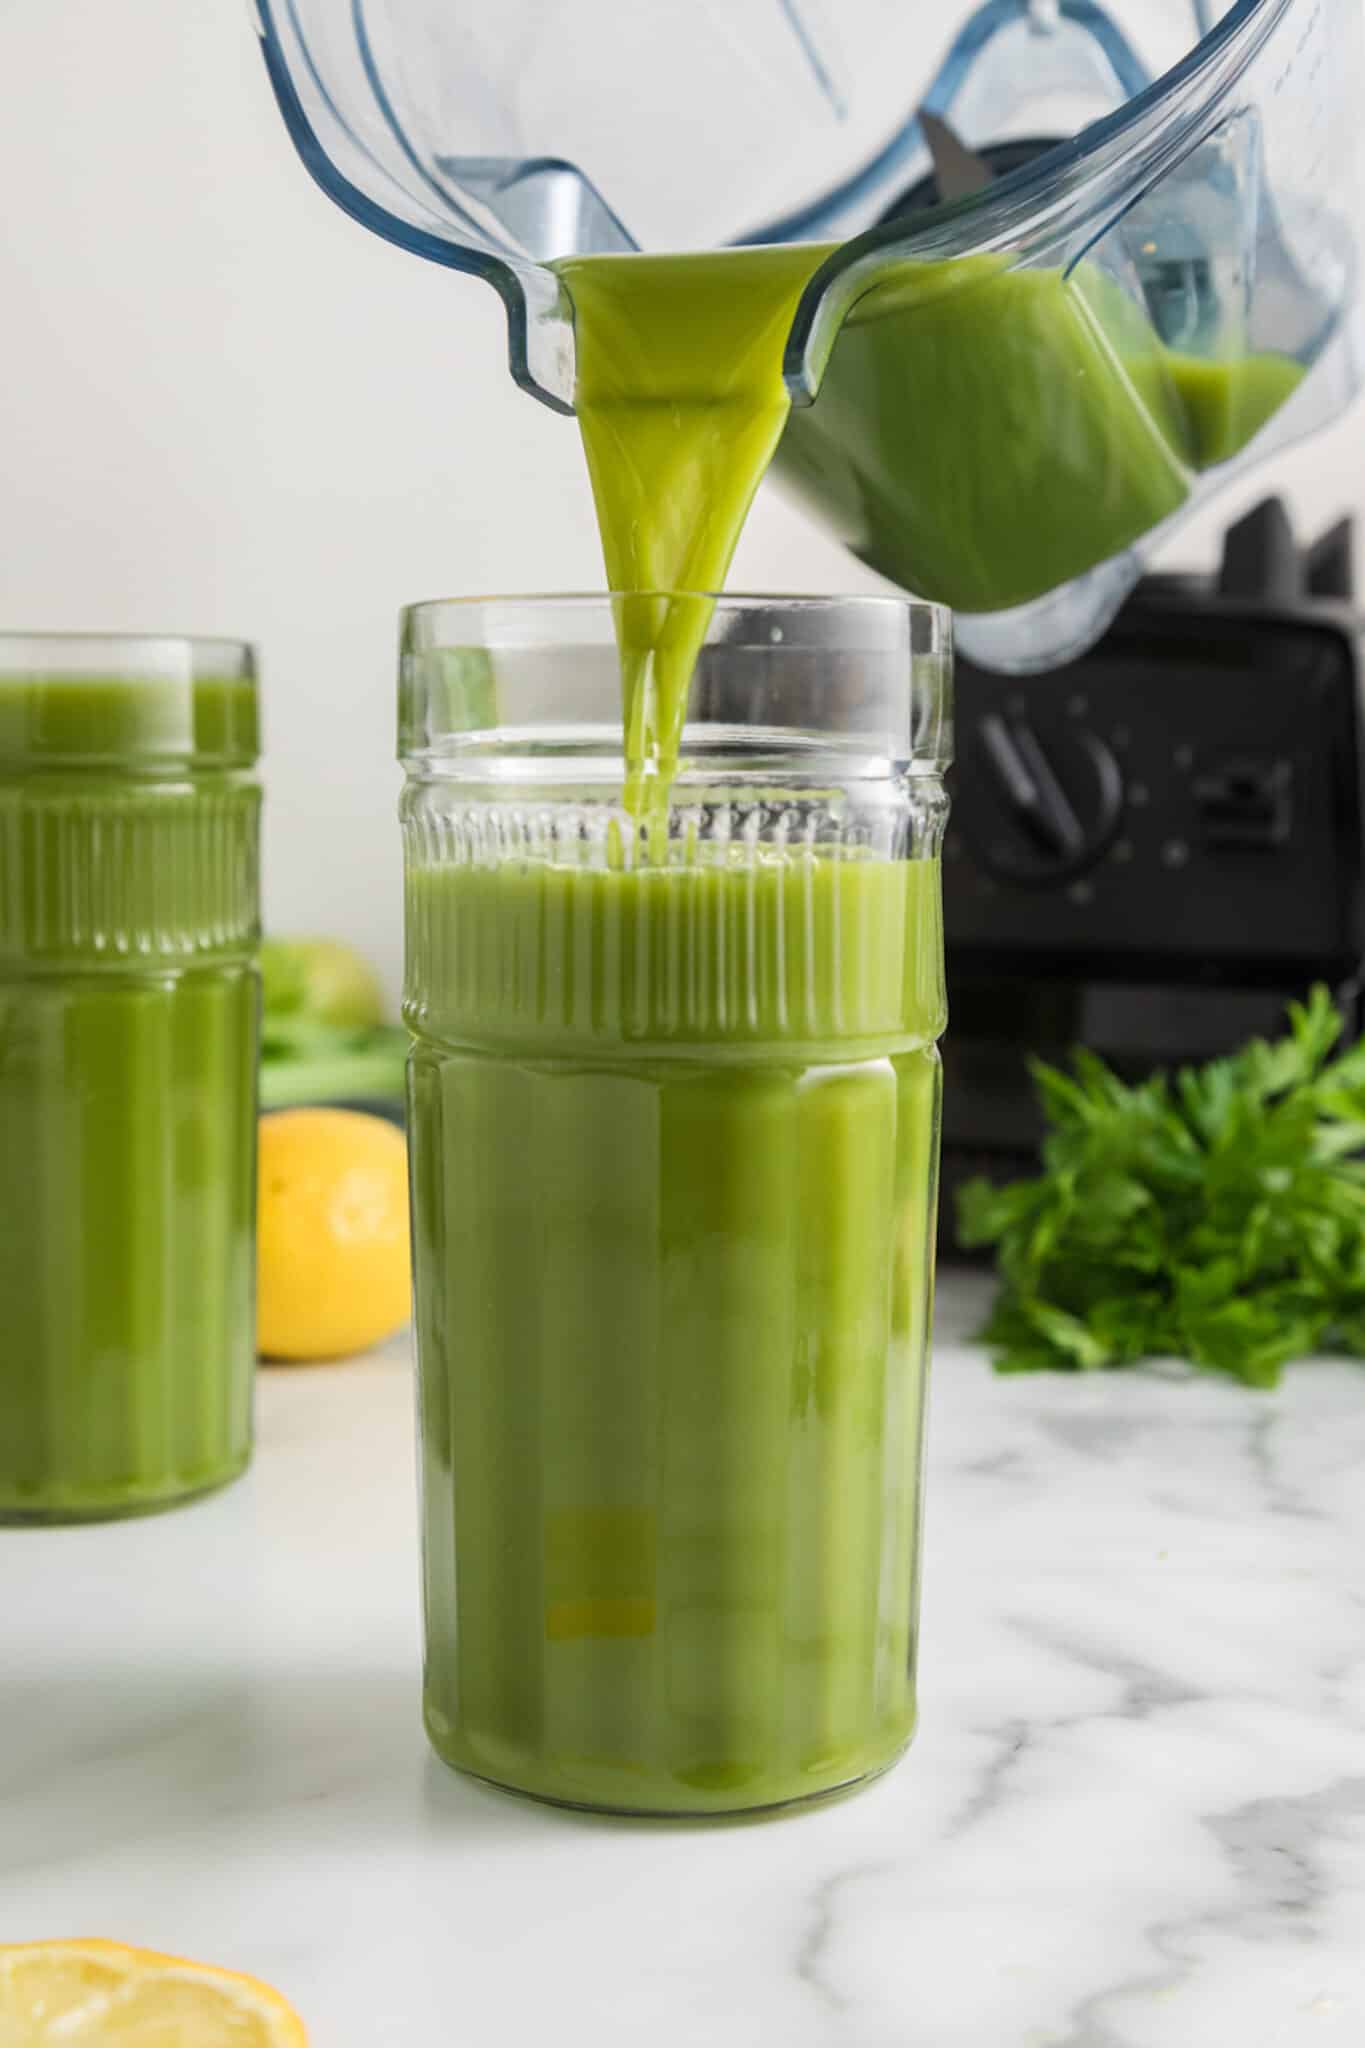 Verter la receta de jugo verde de la licuadora en un vaso alto.